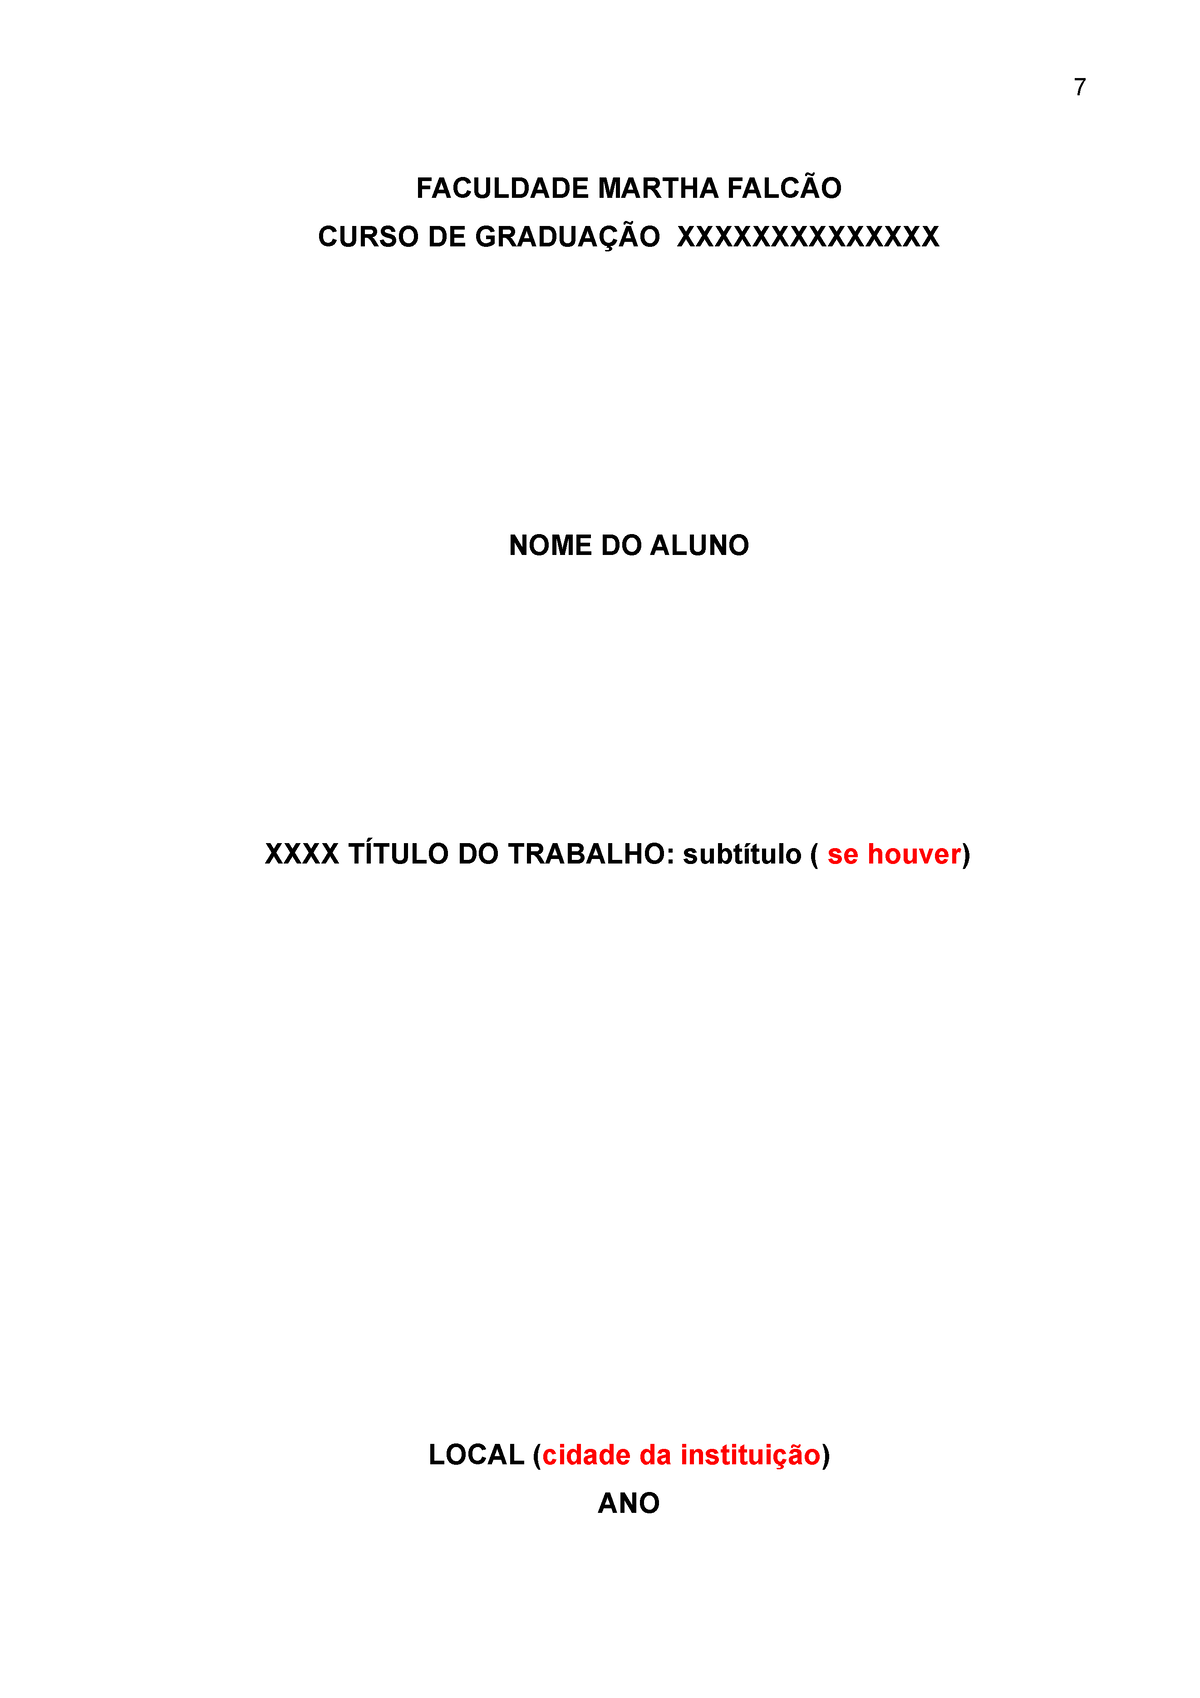 Modelo De Tcc Monografia Faculdade Martha FalcÃo Curso De GraduaÇÃo Xxxxxxxxxxxxxx Nome Do 6339